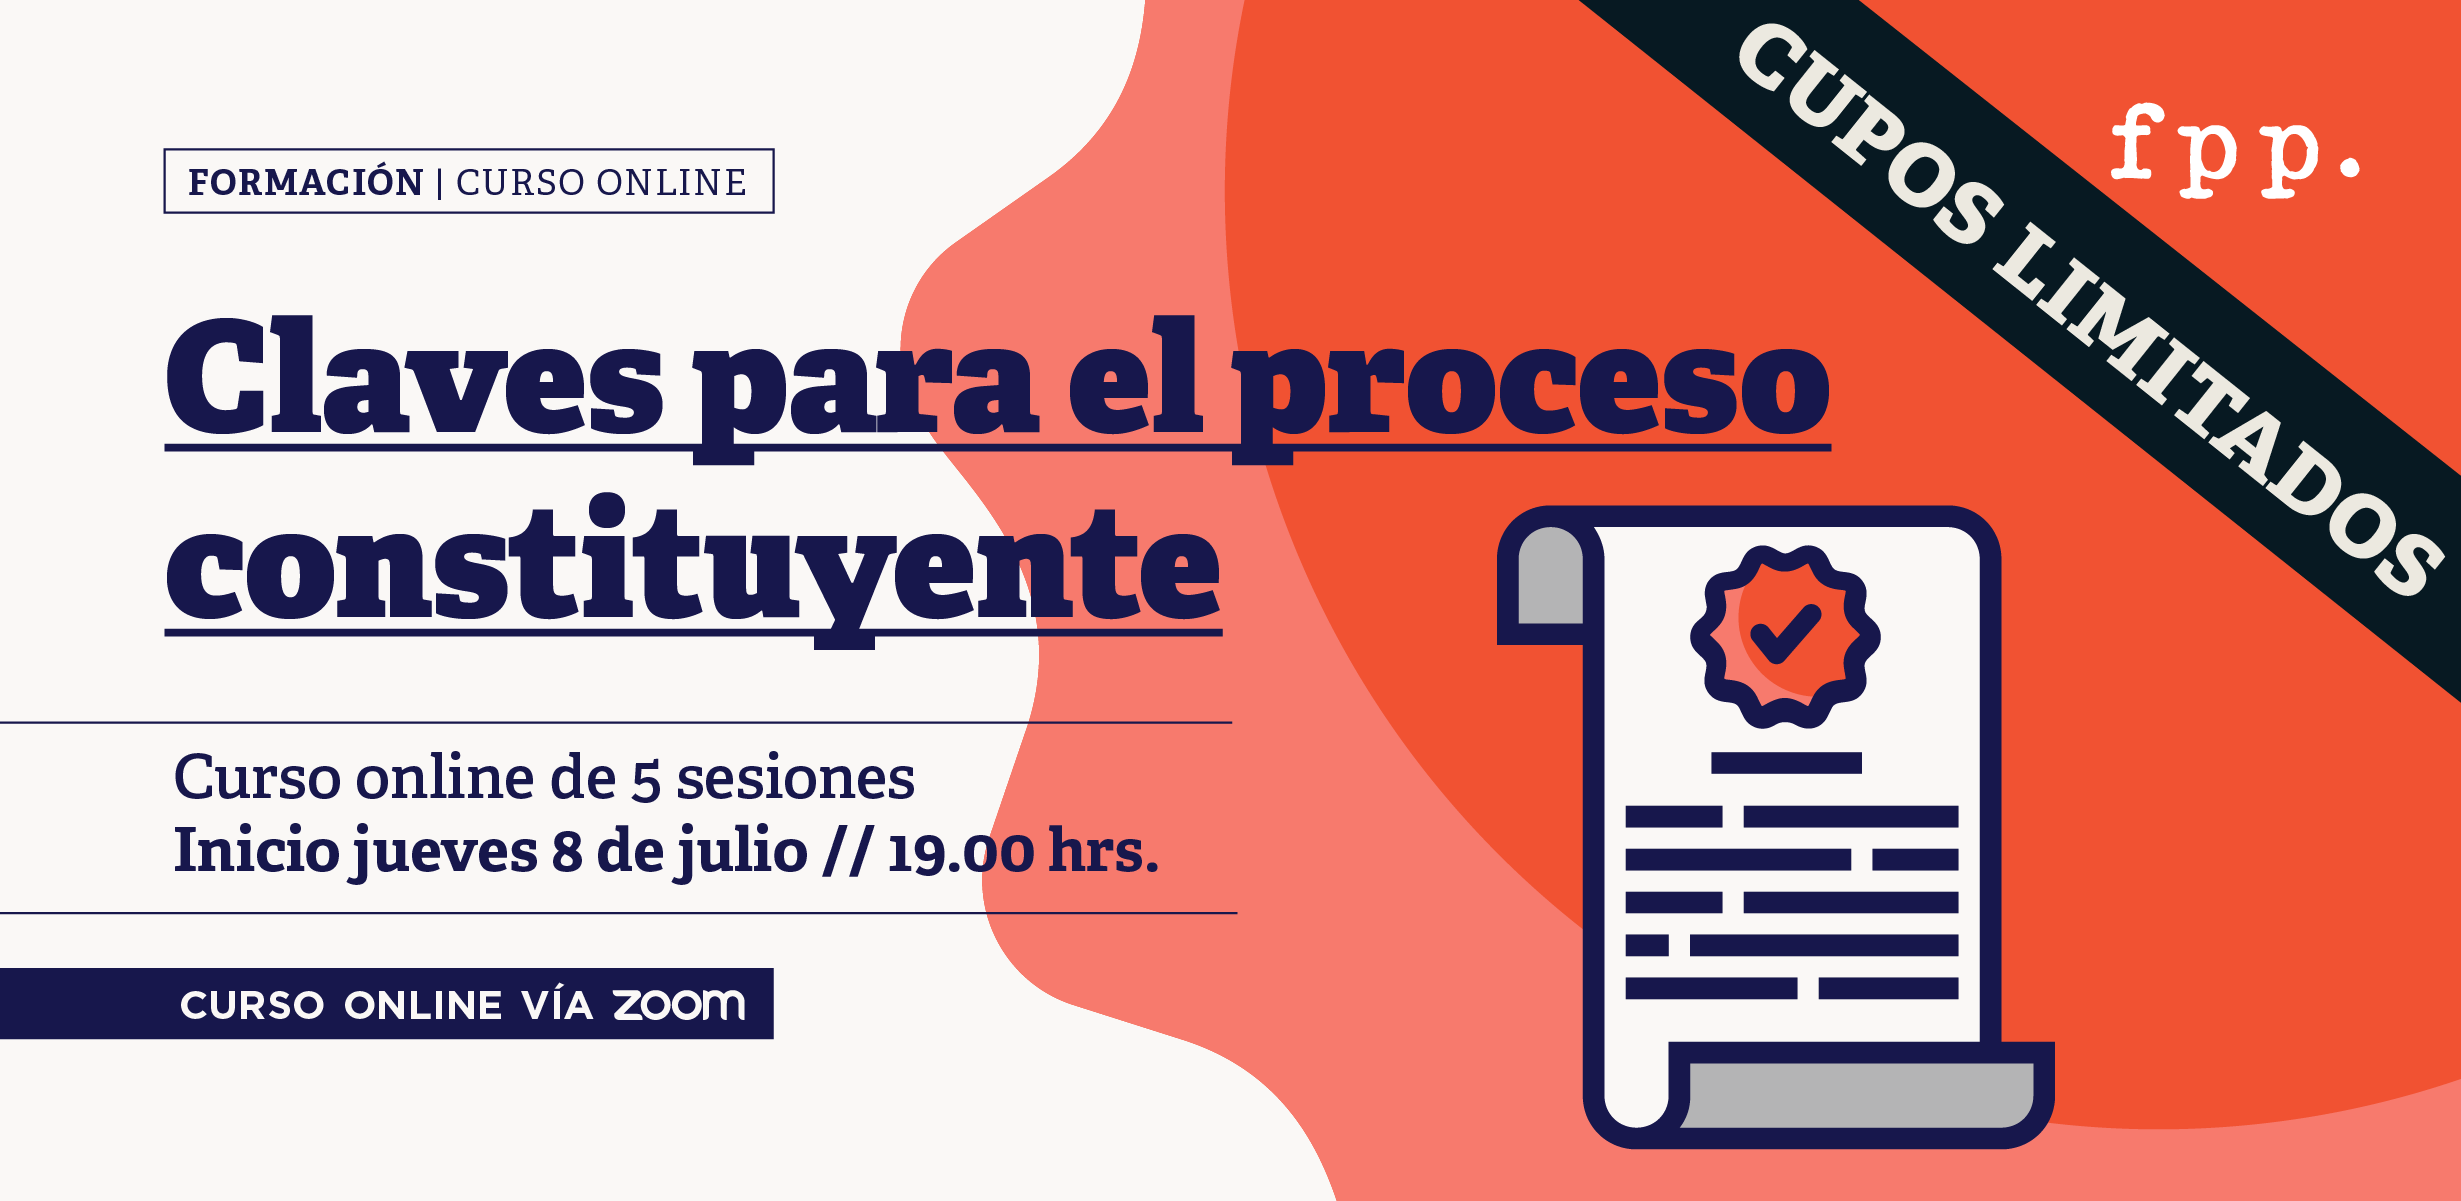 Curso online: Claves para el proceso constituyente en Chile